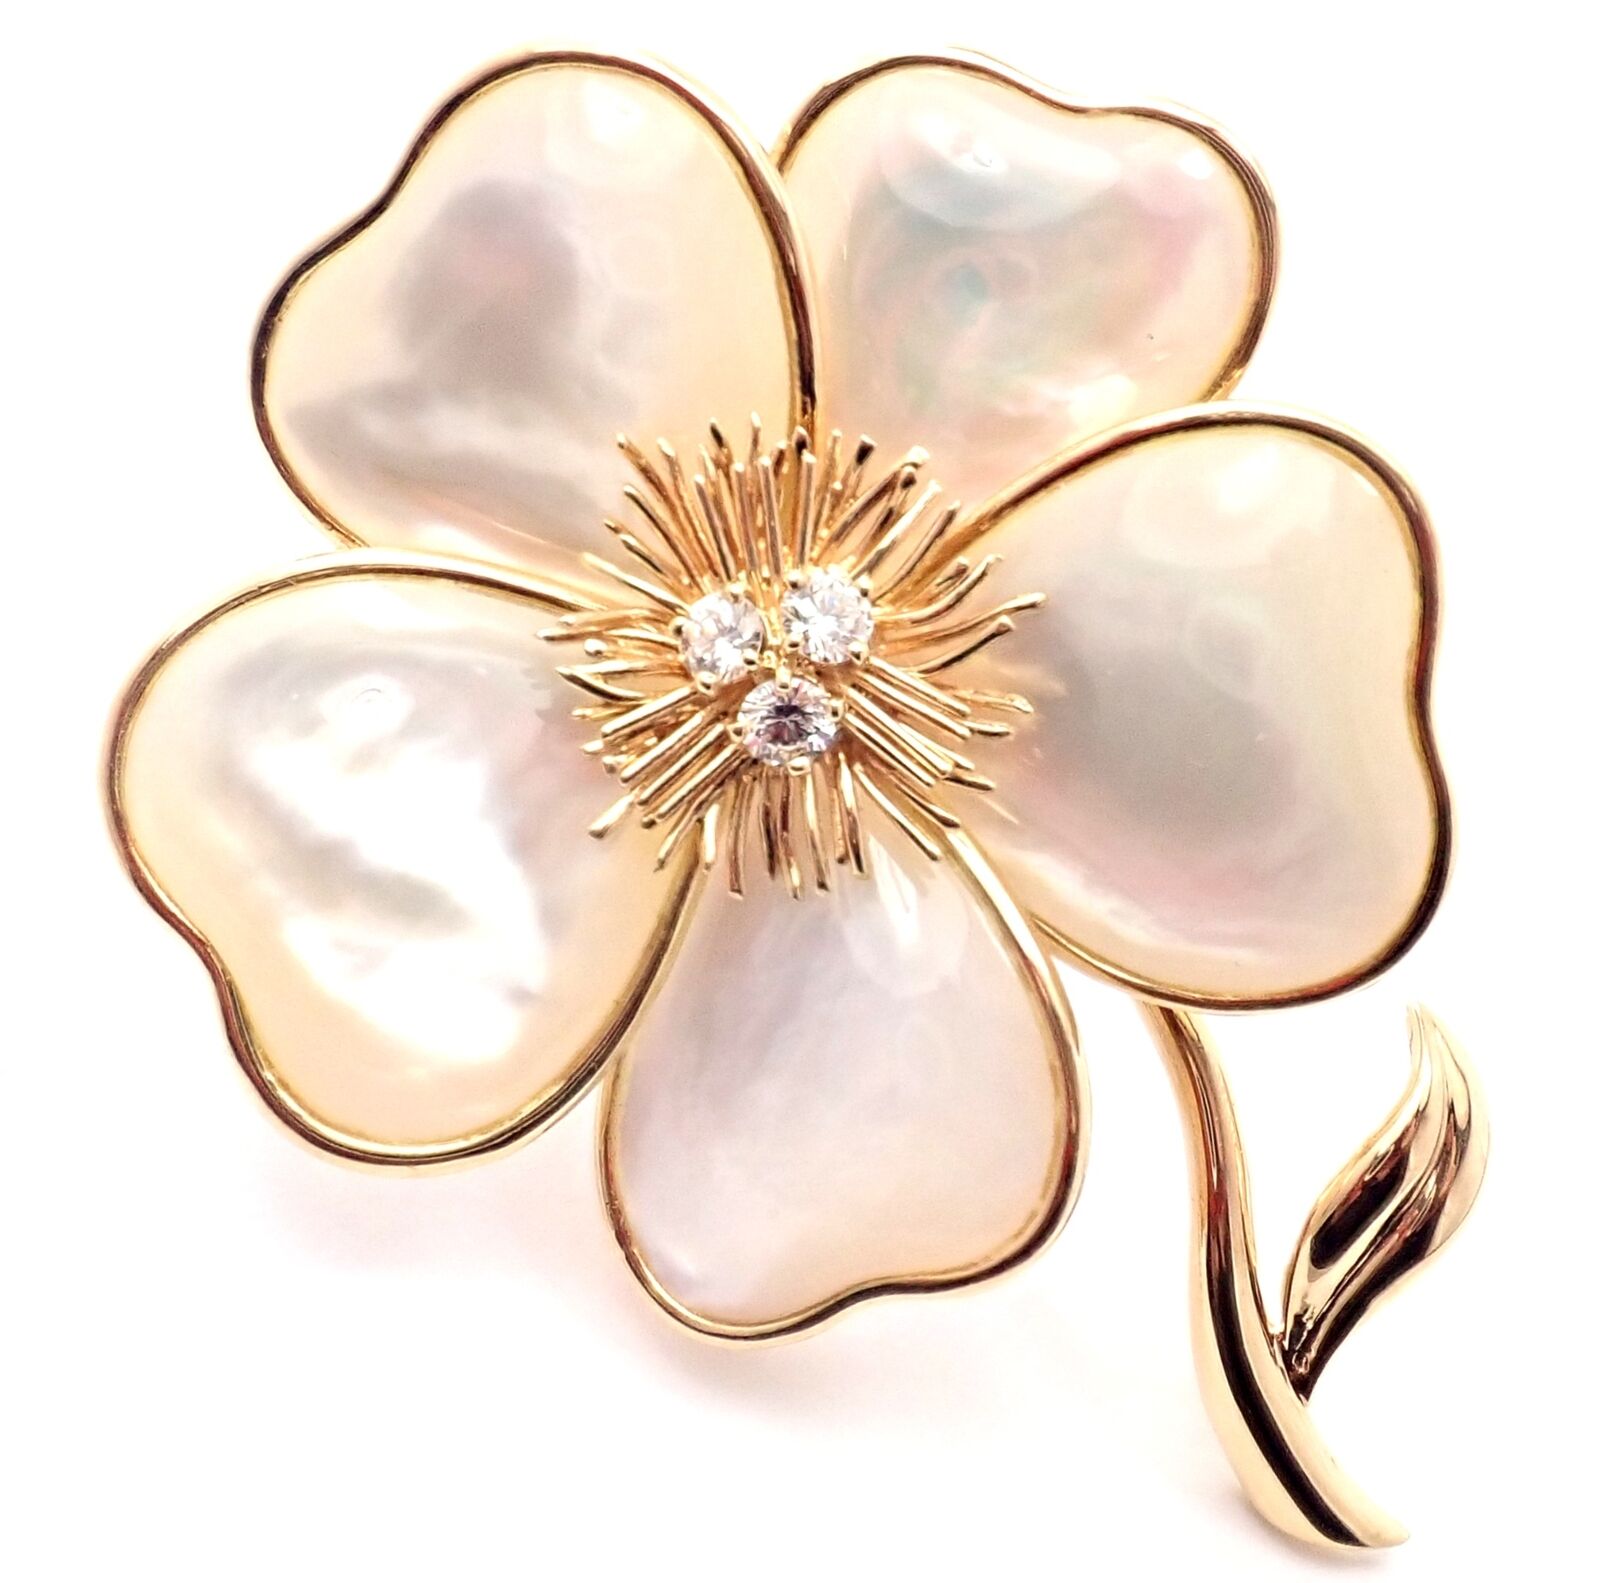 VAN CLEEF & ARPELS 18K YELLOW GOLD ROSE DE NOEL CORAL DIAMOND FLOWER BROOCH